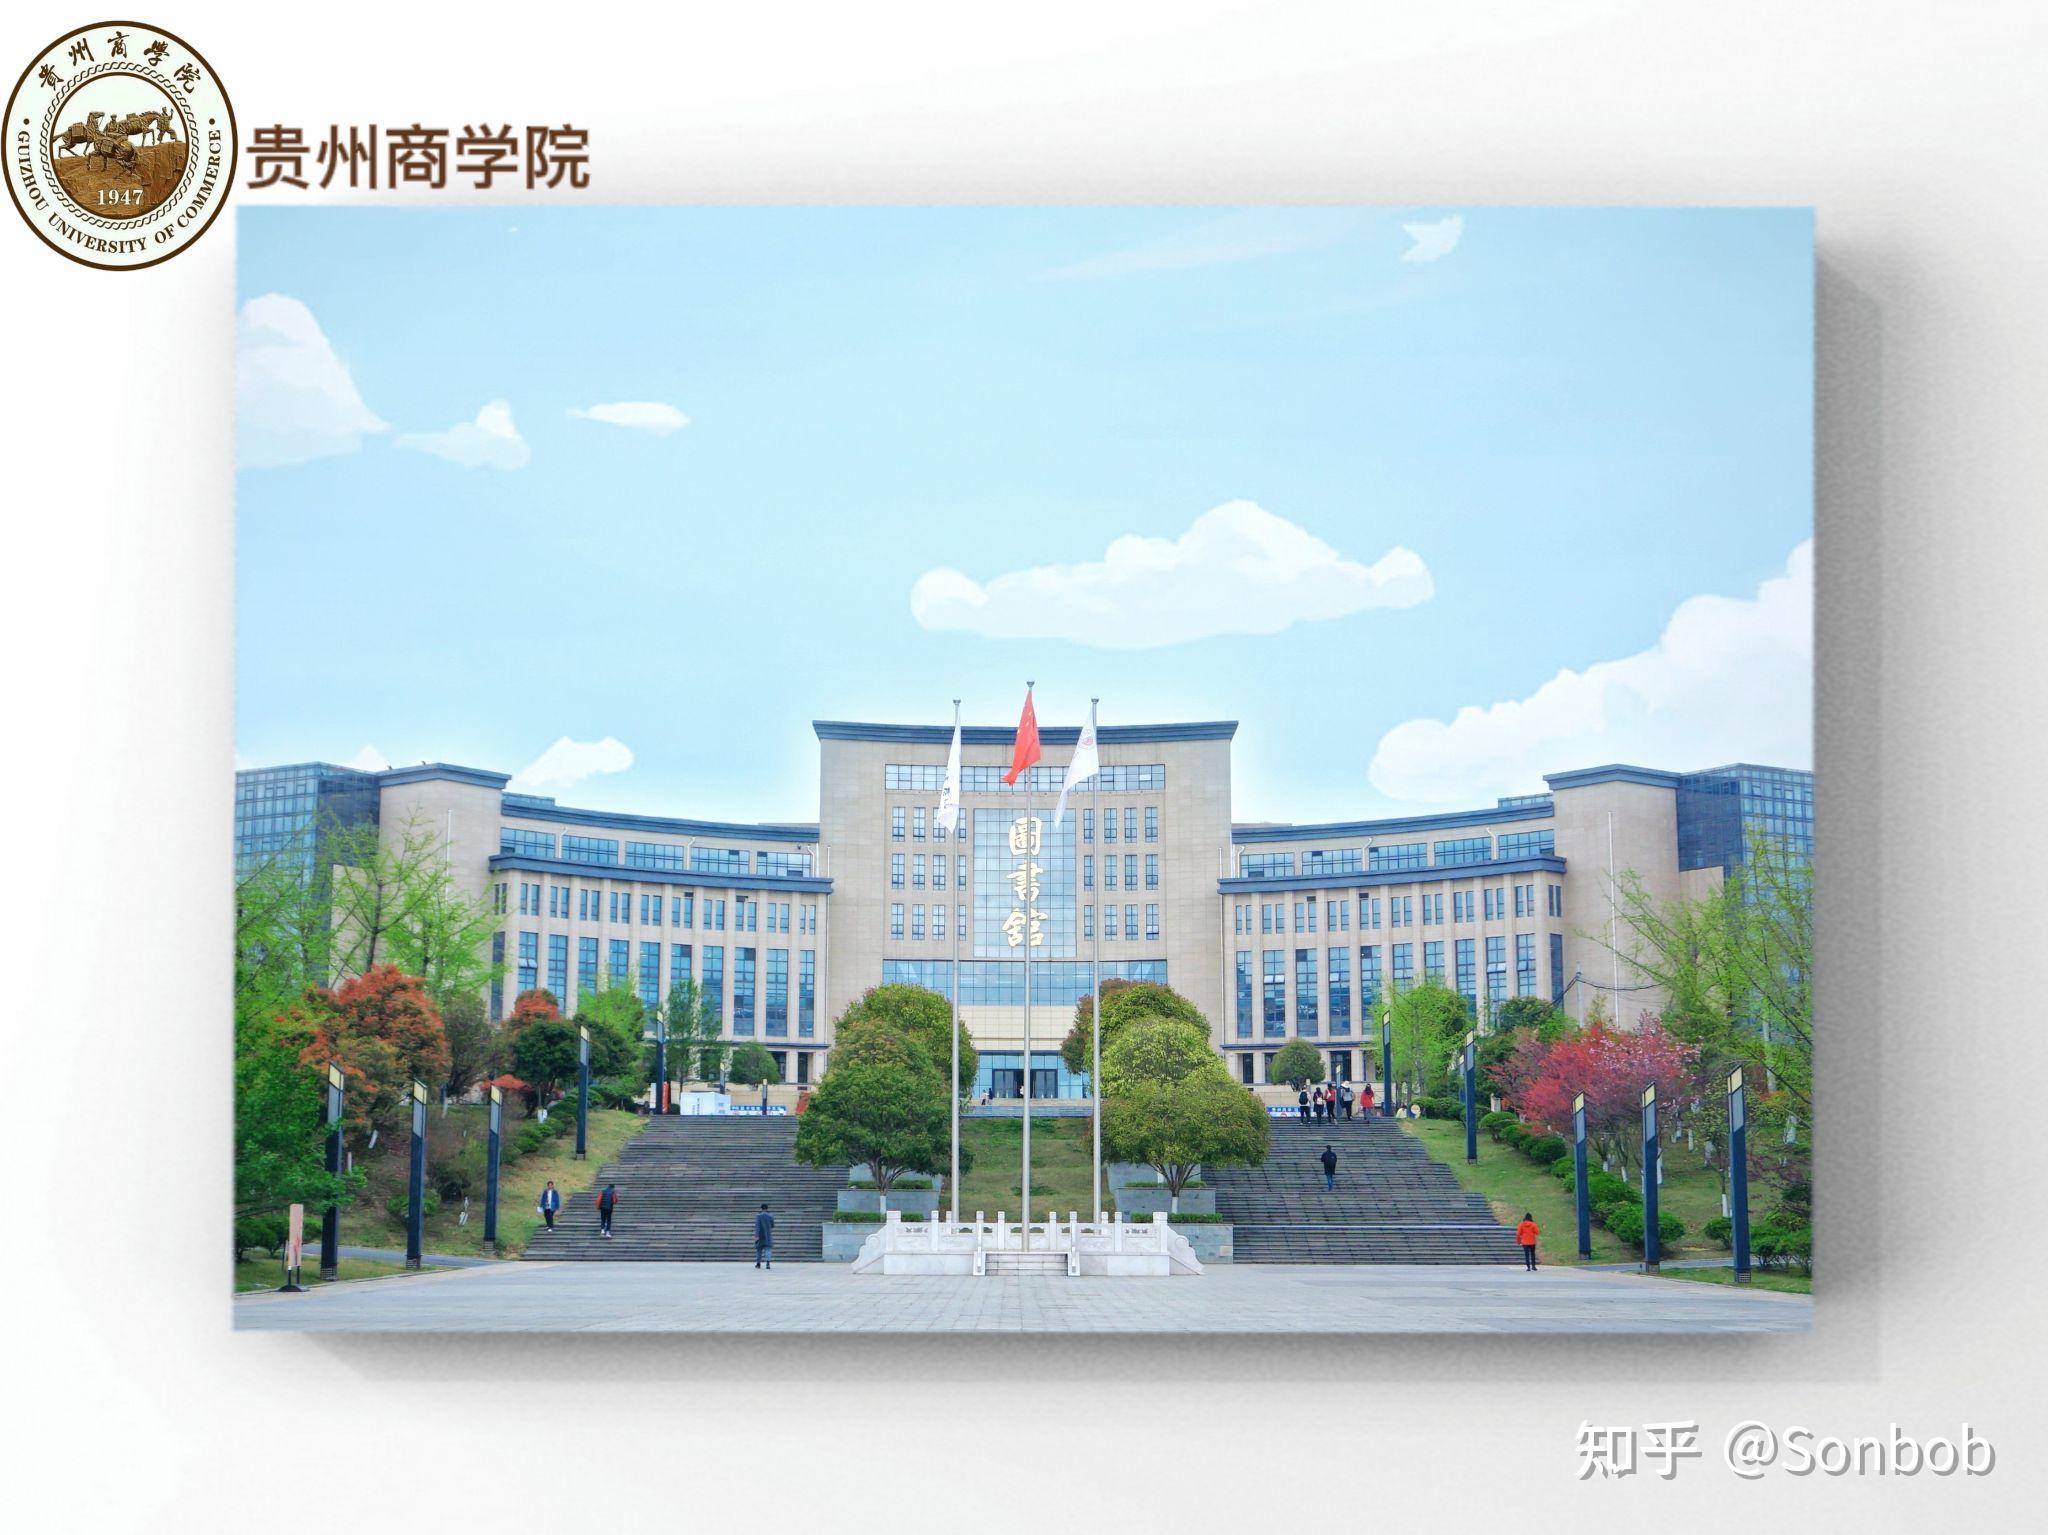 贵州商学院布局图图片